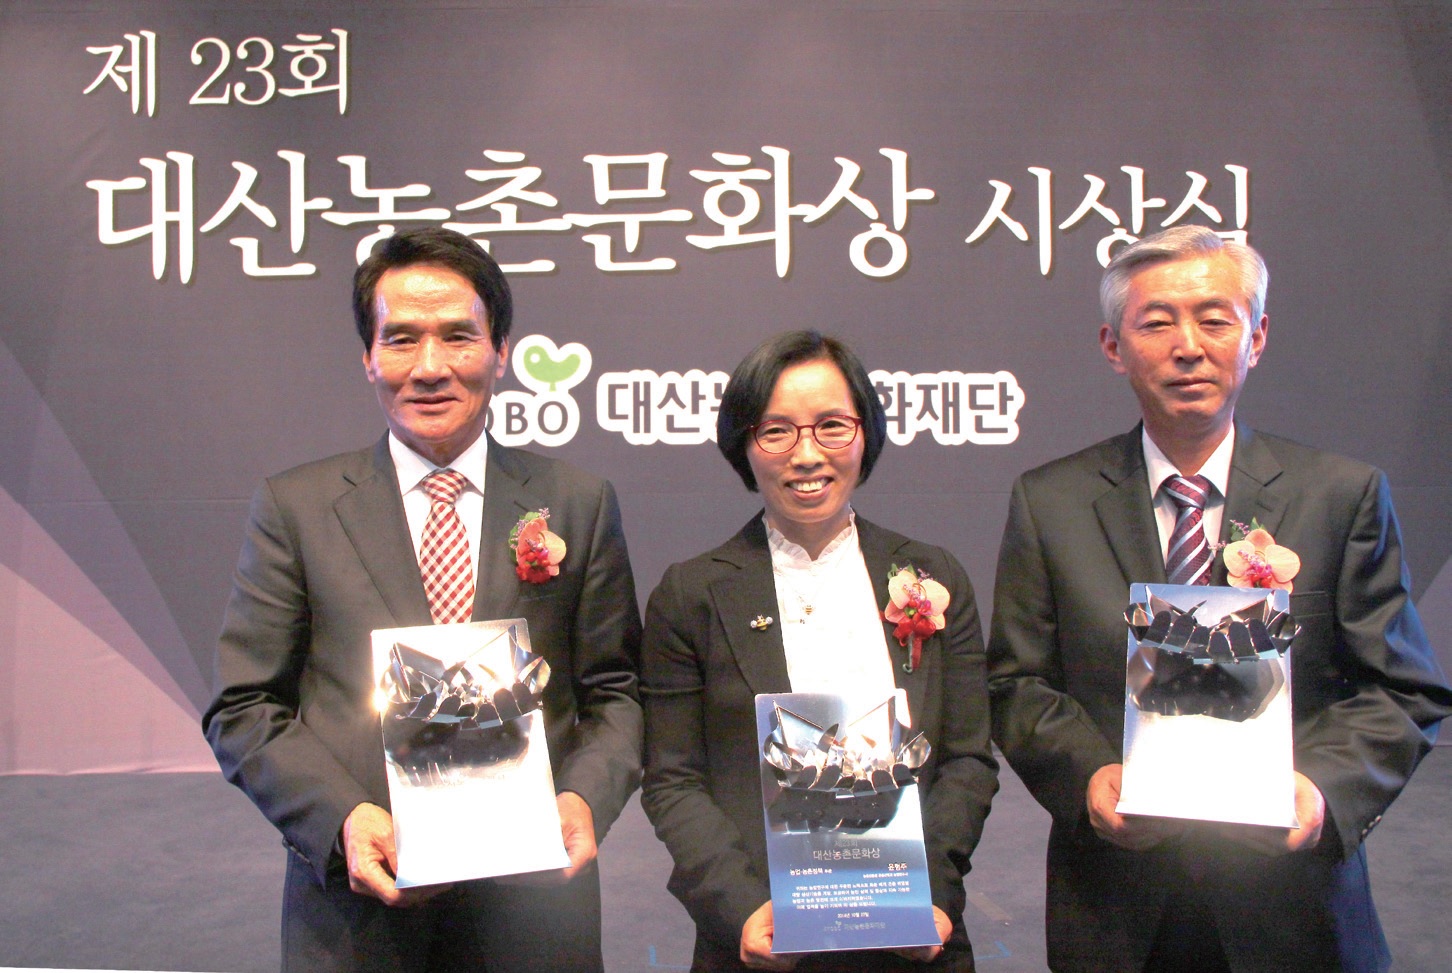 제23회 대산농촌문화상 수상자. 왼쪽부터 신영준, 윤형주, 이호열 수상자